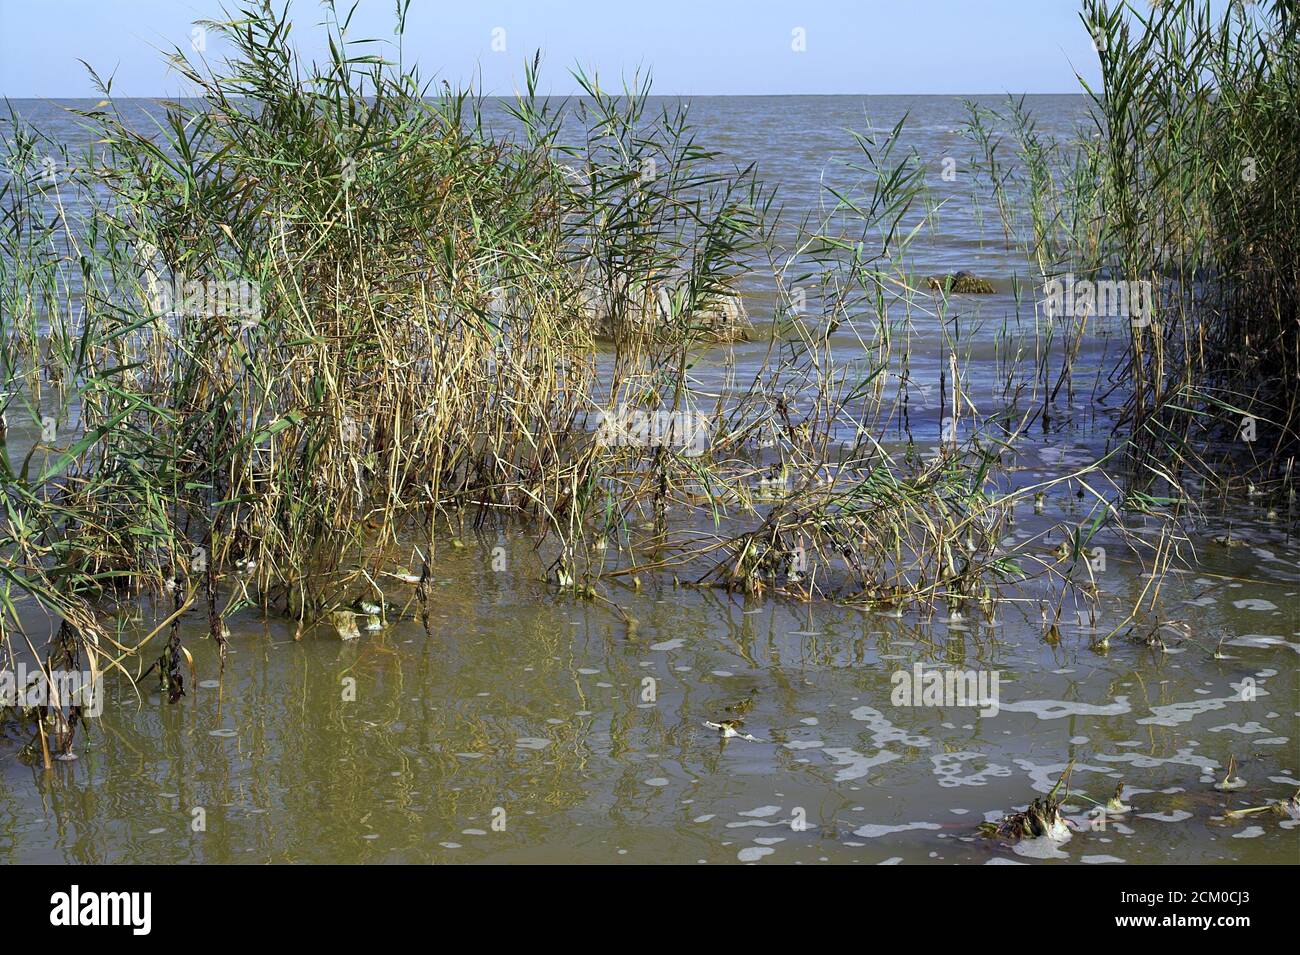 Romania, reeds on the shore of the Black Sea near Istria. Rumänien, Schilf am Ufer des Schwarzes Meer in der Nähe von Istrien. Stock Photo